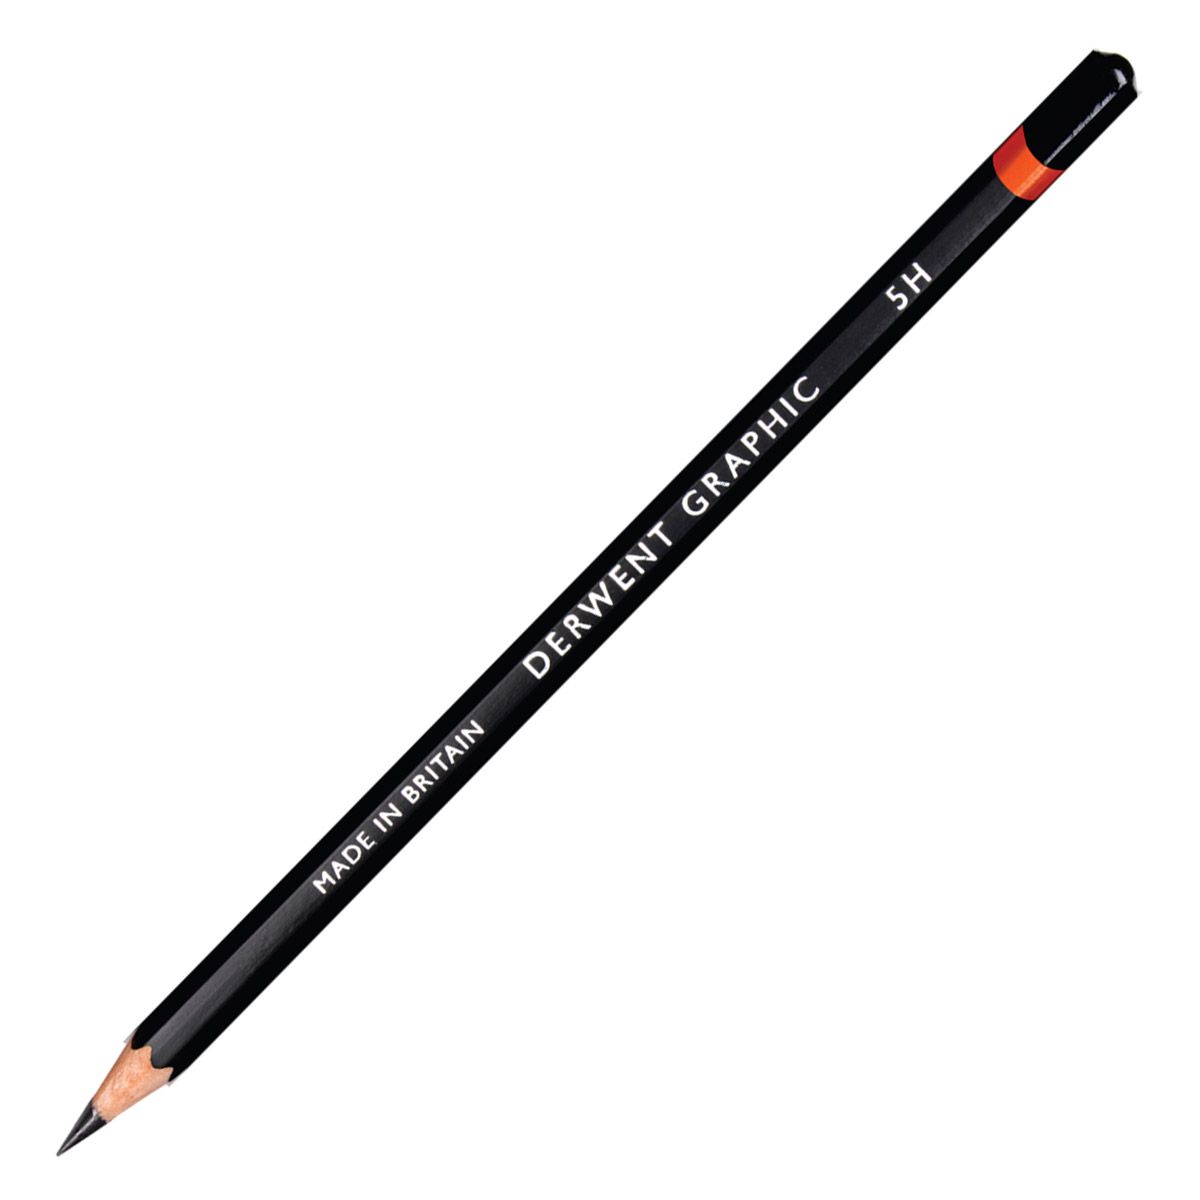 Derwent Graphic Pencil - 5H